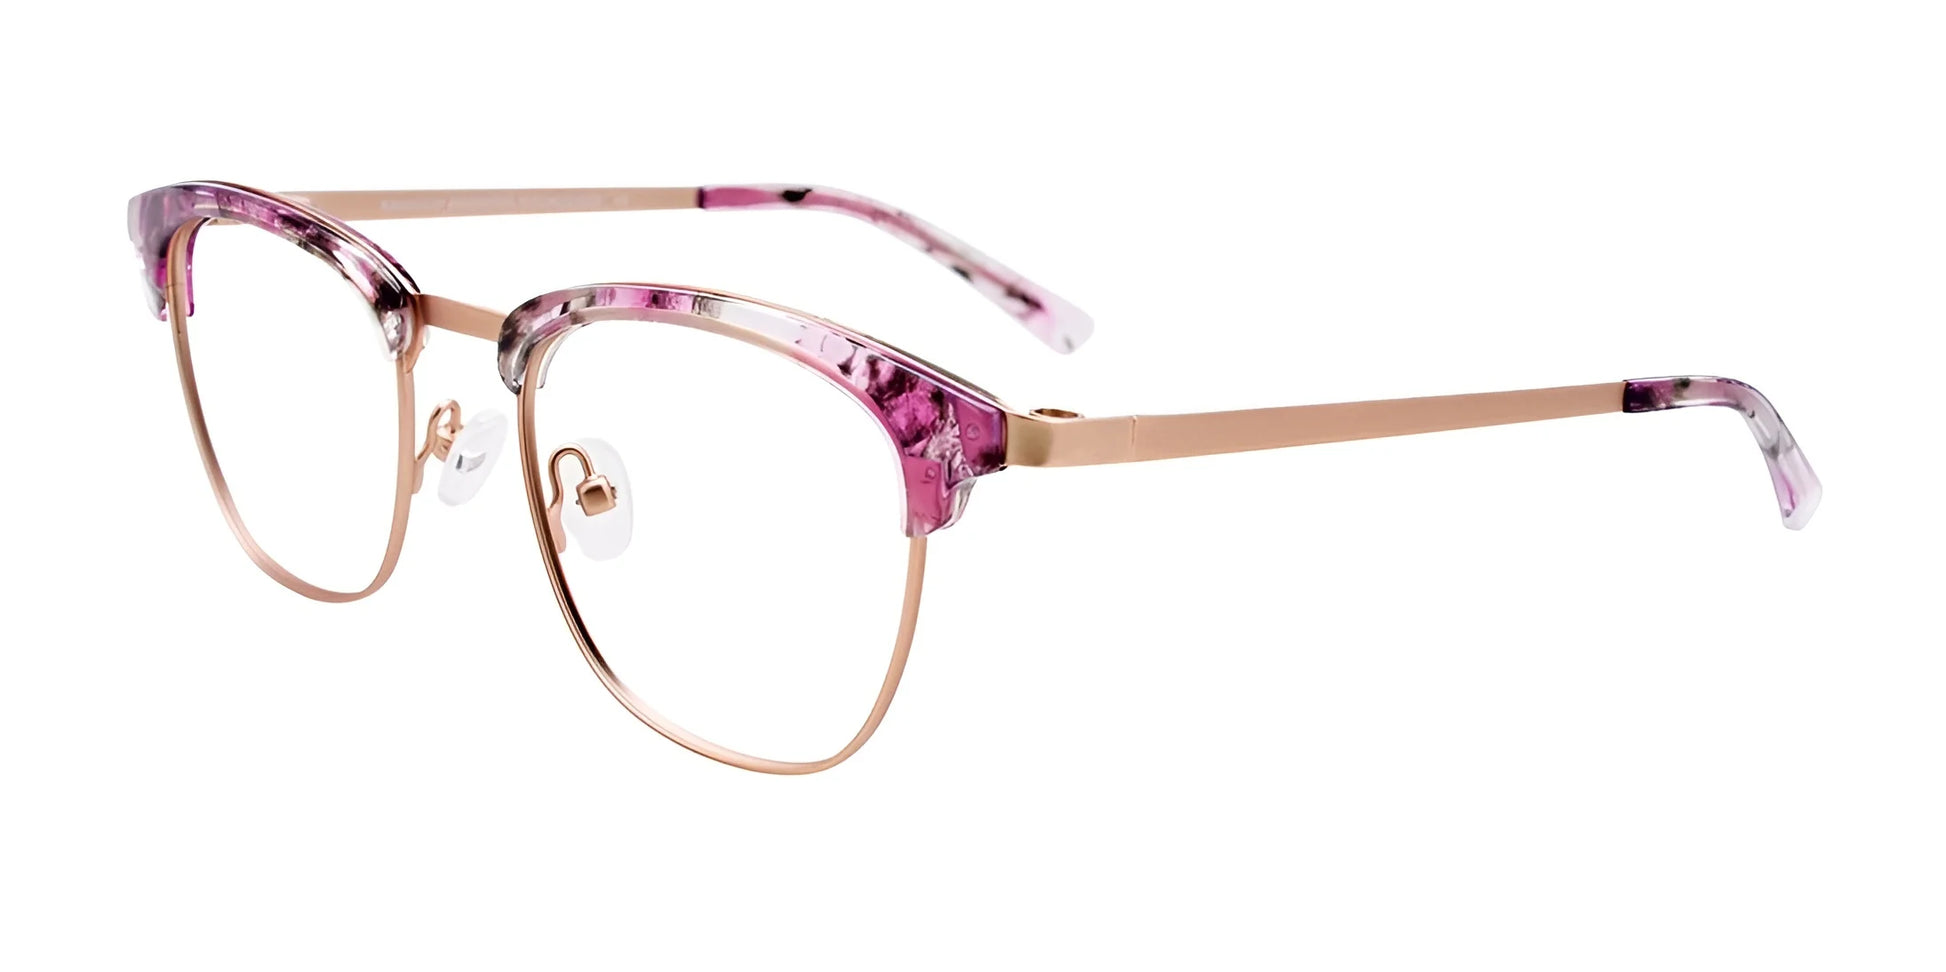 EasyClip EC544 Eyeglasses Matt Rose Gold & Marbled Lilac & Crystal